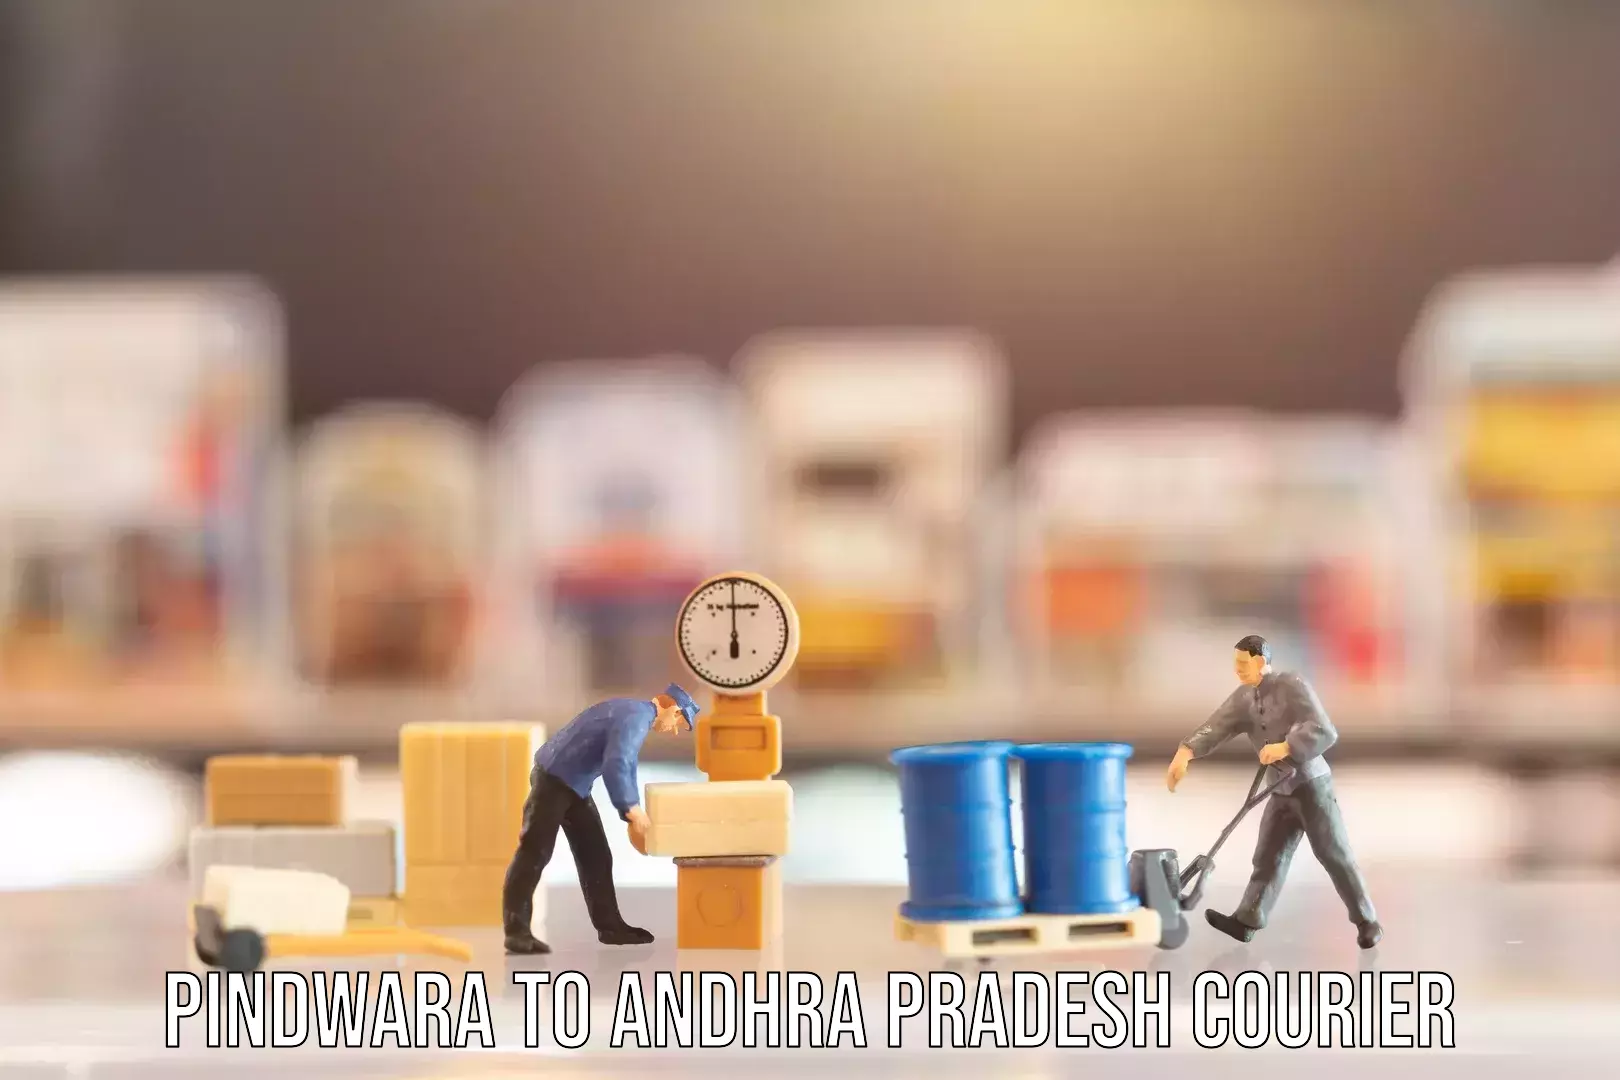 Baggage delivery technology Pindwara to Andhra Pradesh